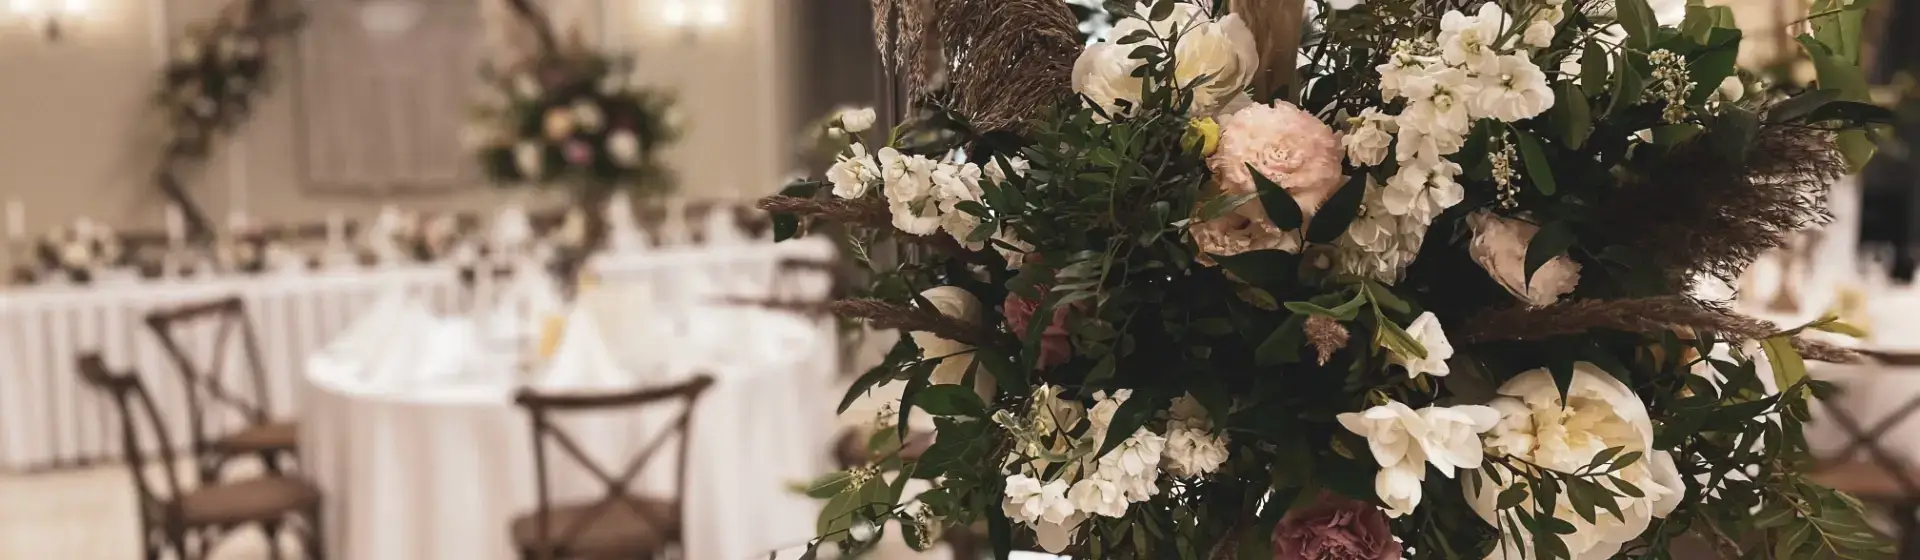 sala weselna bukiet kwiatów